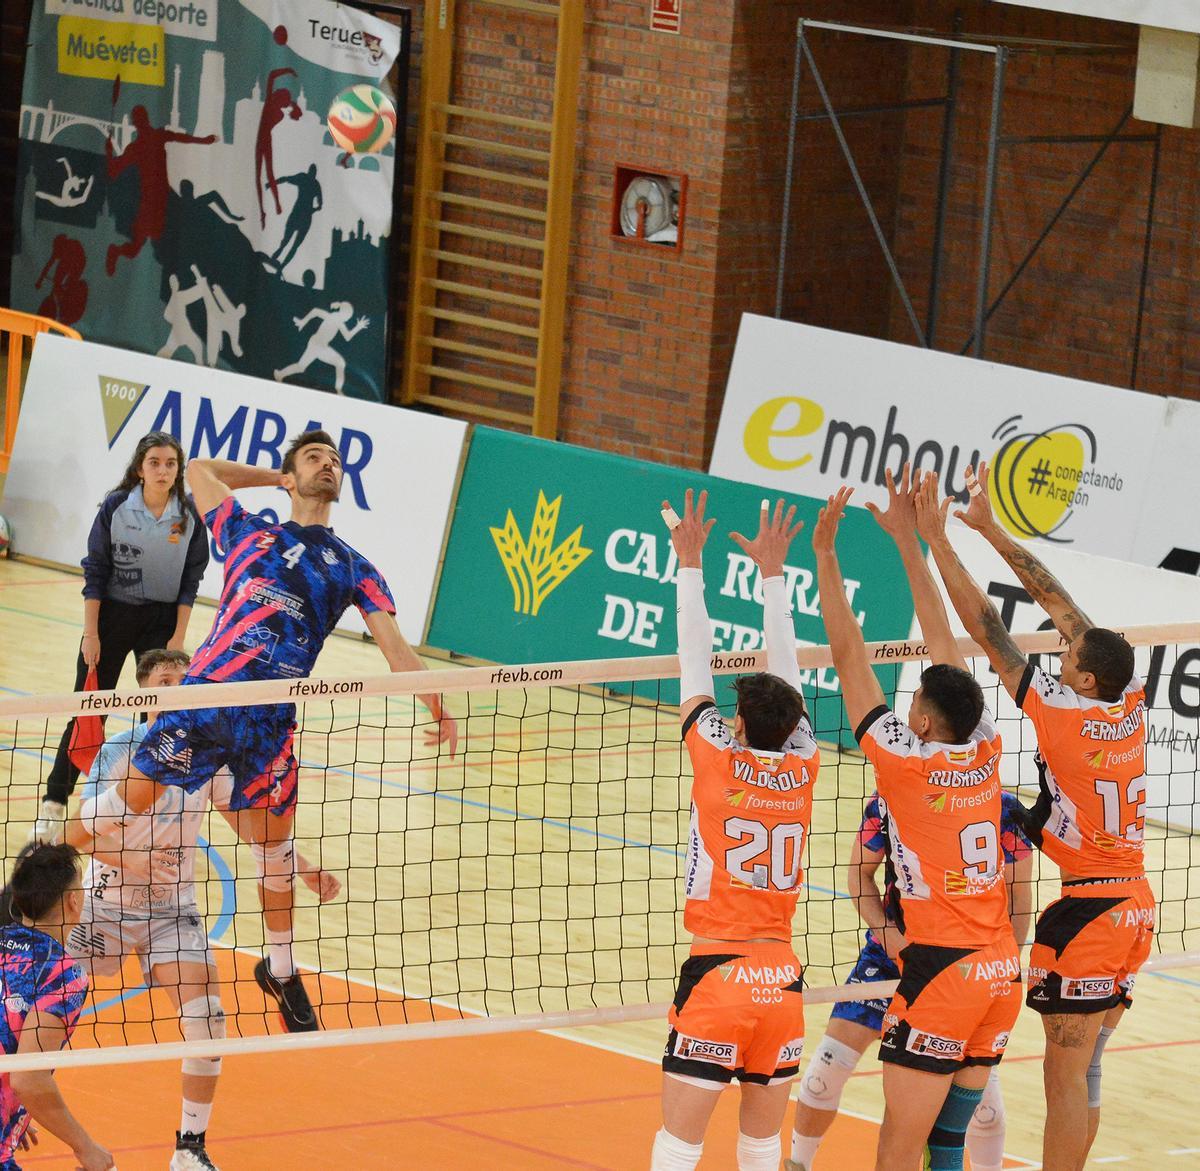 El equipo valenciano sigue su puesta a punto  de cara a la Superliga de voleibol.